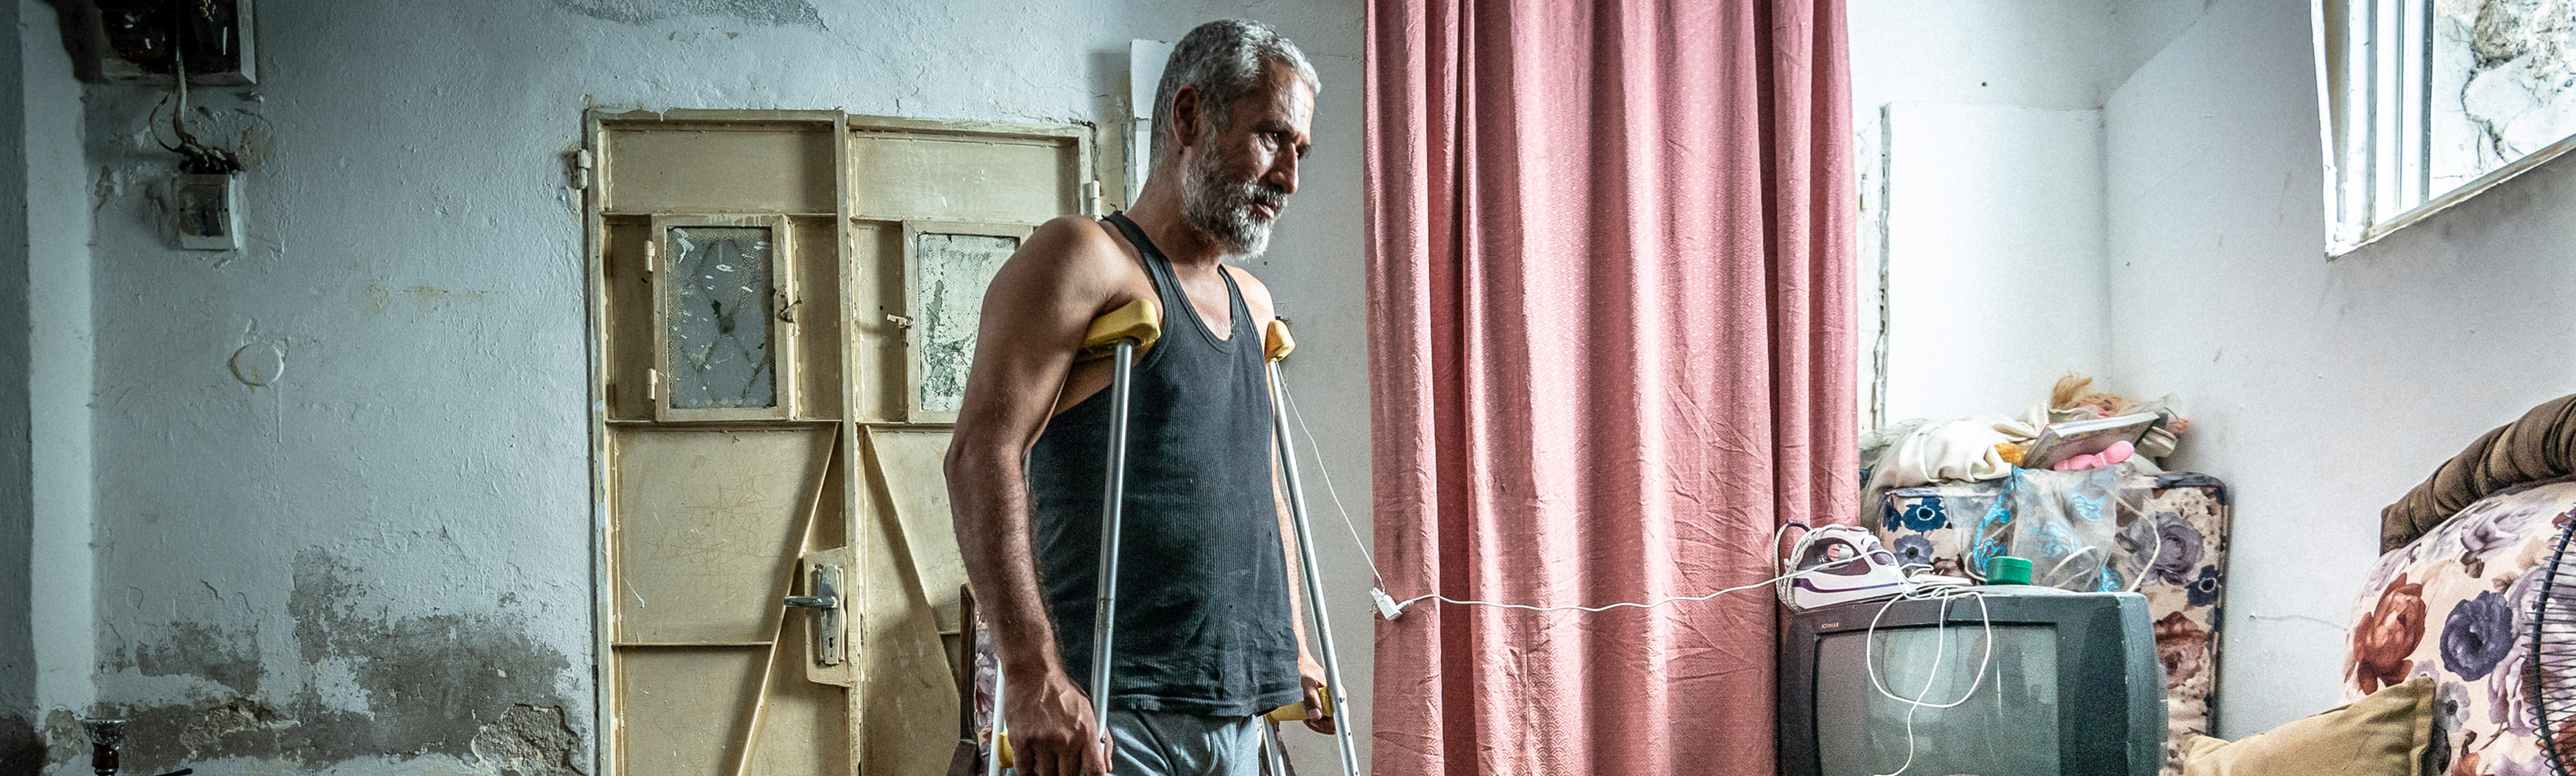 Jordanie, Ibrahim a été blessé à la jambe lors d’un bombardement en Syrie. Il se déplace à l’aide de béquilles.